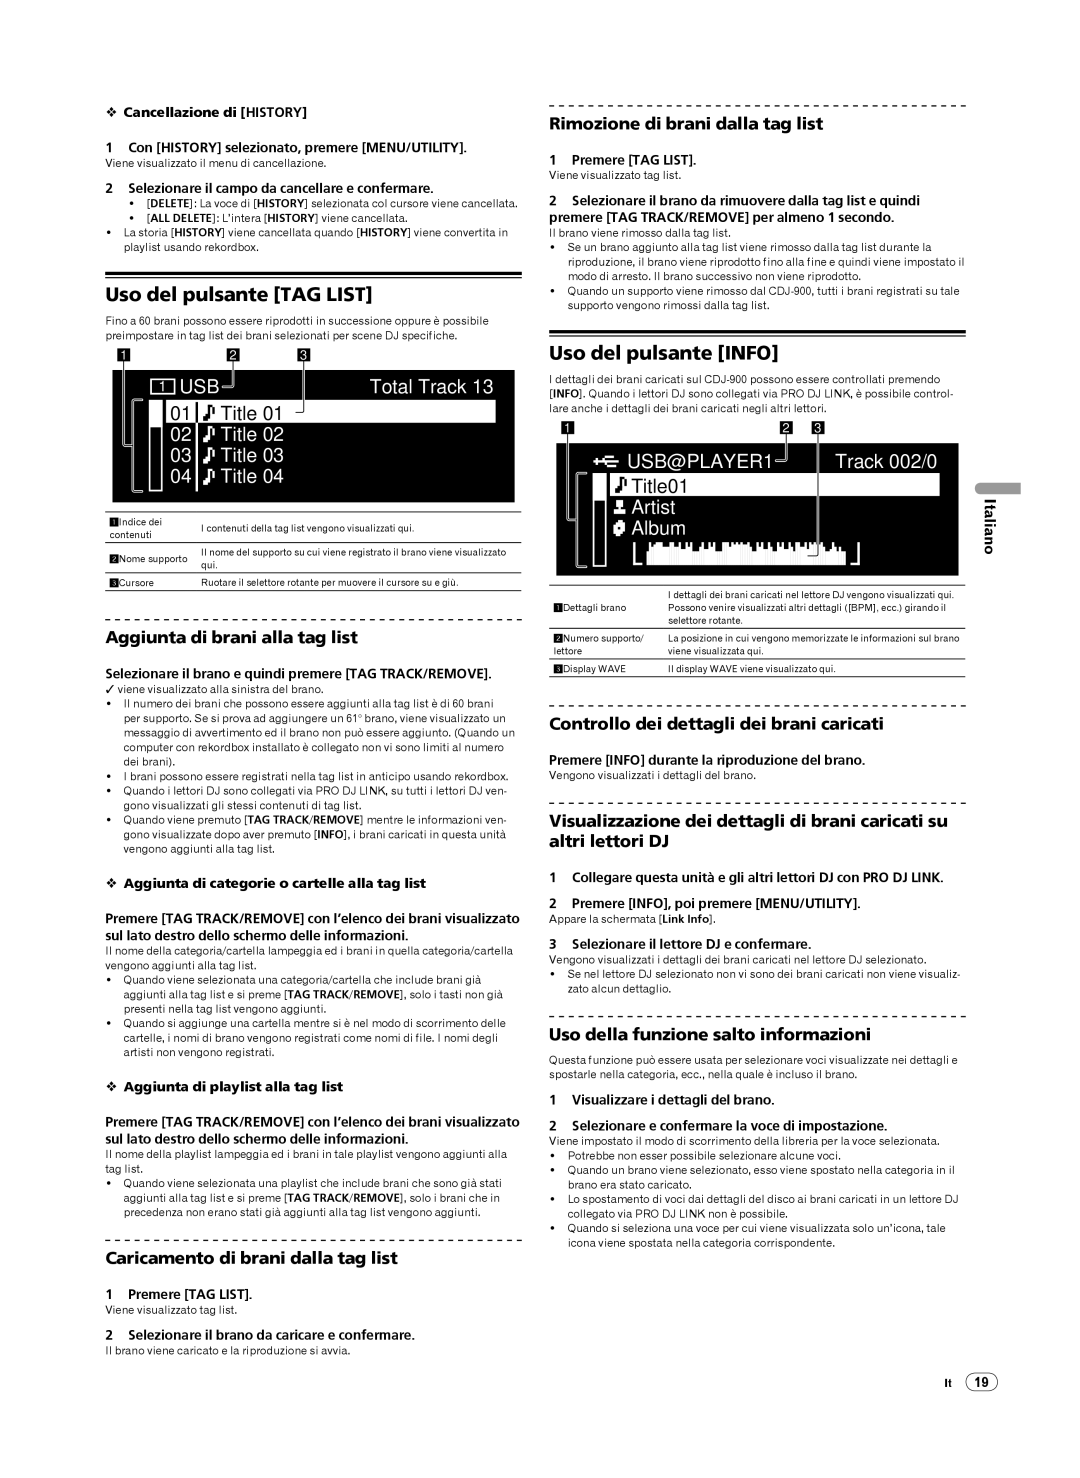 Pioneer Multi Player, CDJ-900 operating instructions Uso del pulsante TAG LIST, Uso del pulsante INFO, Title 